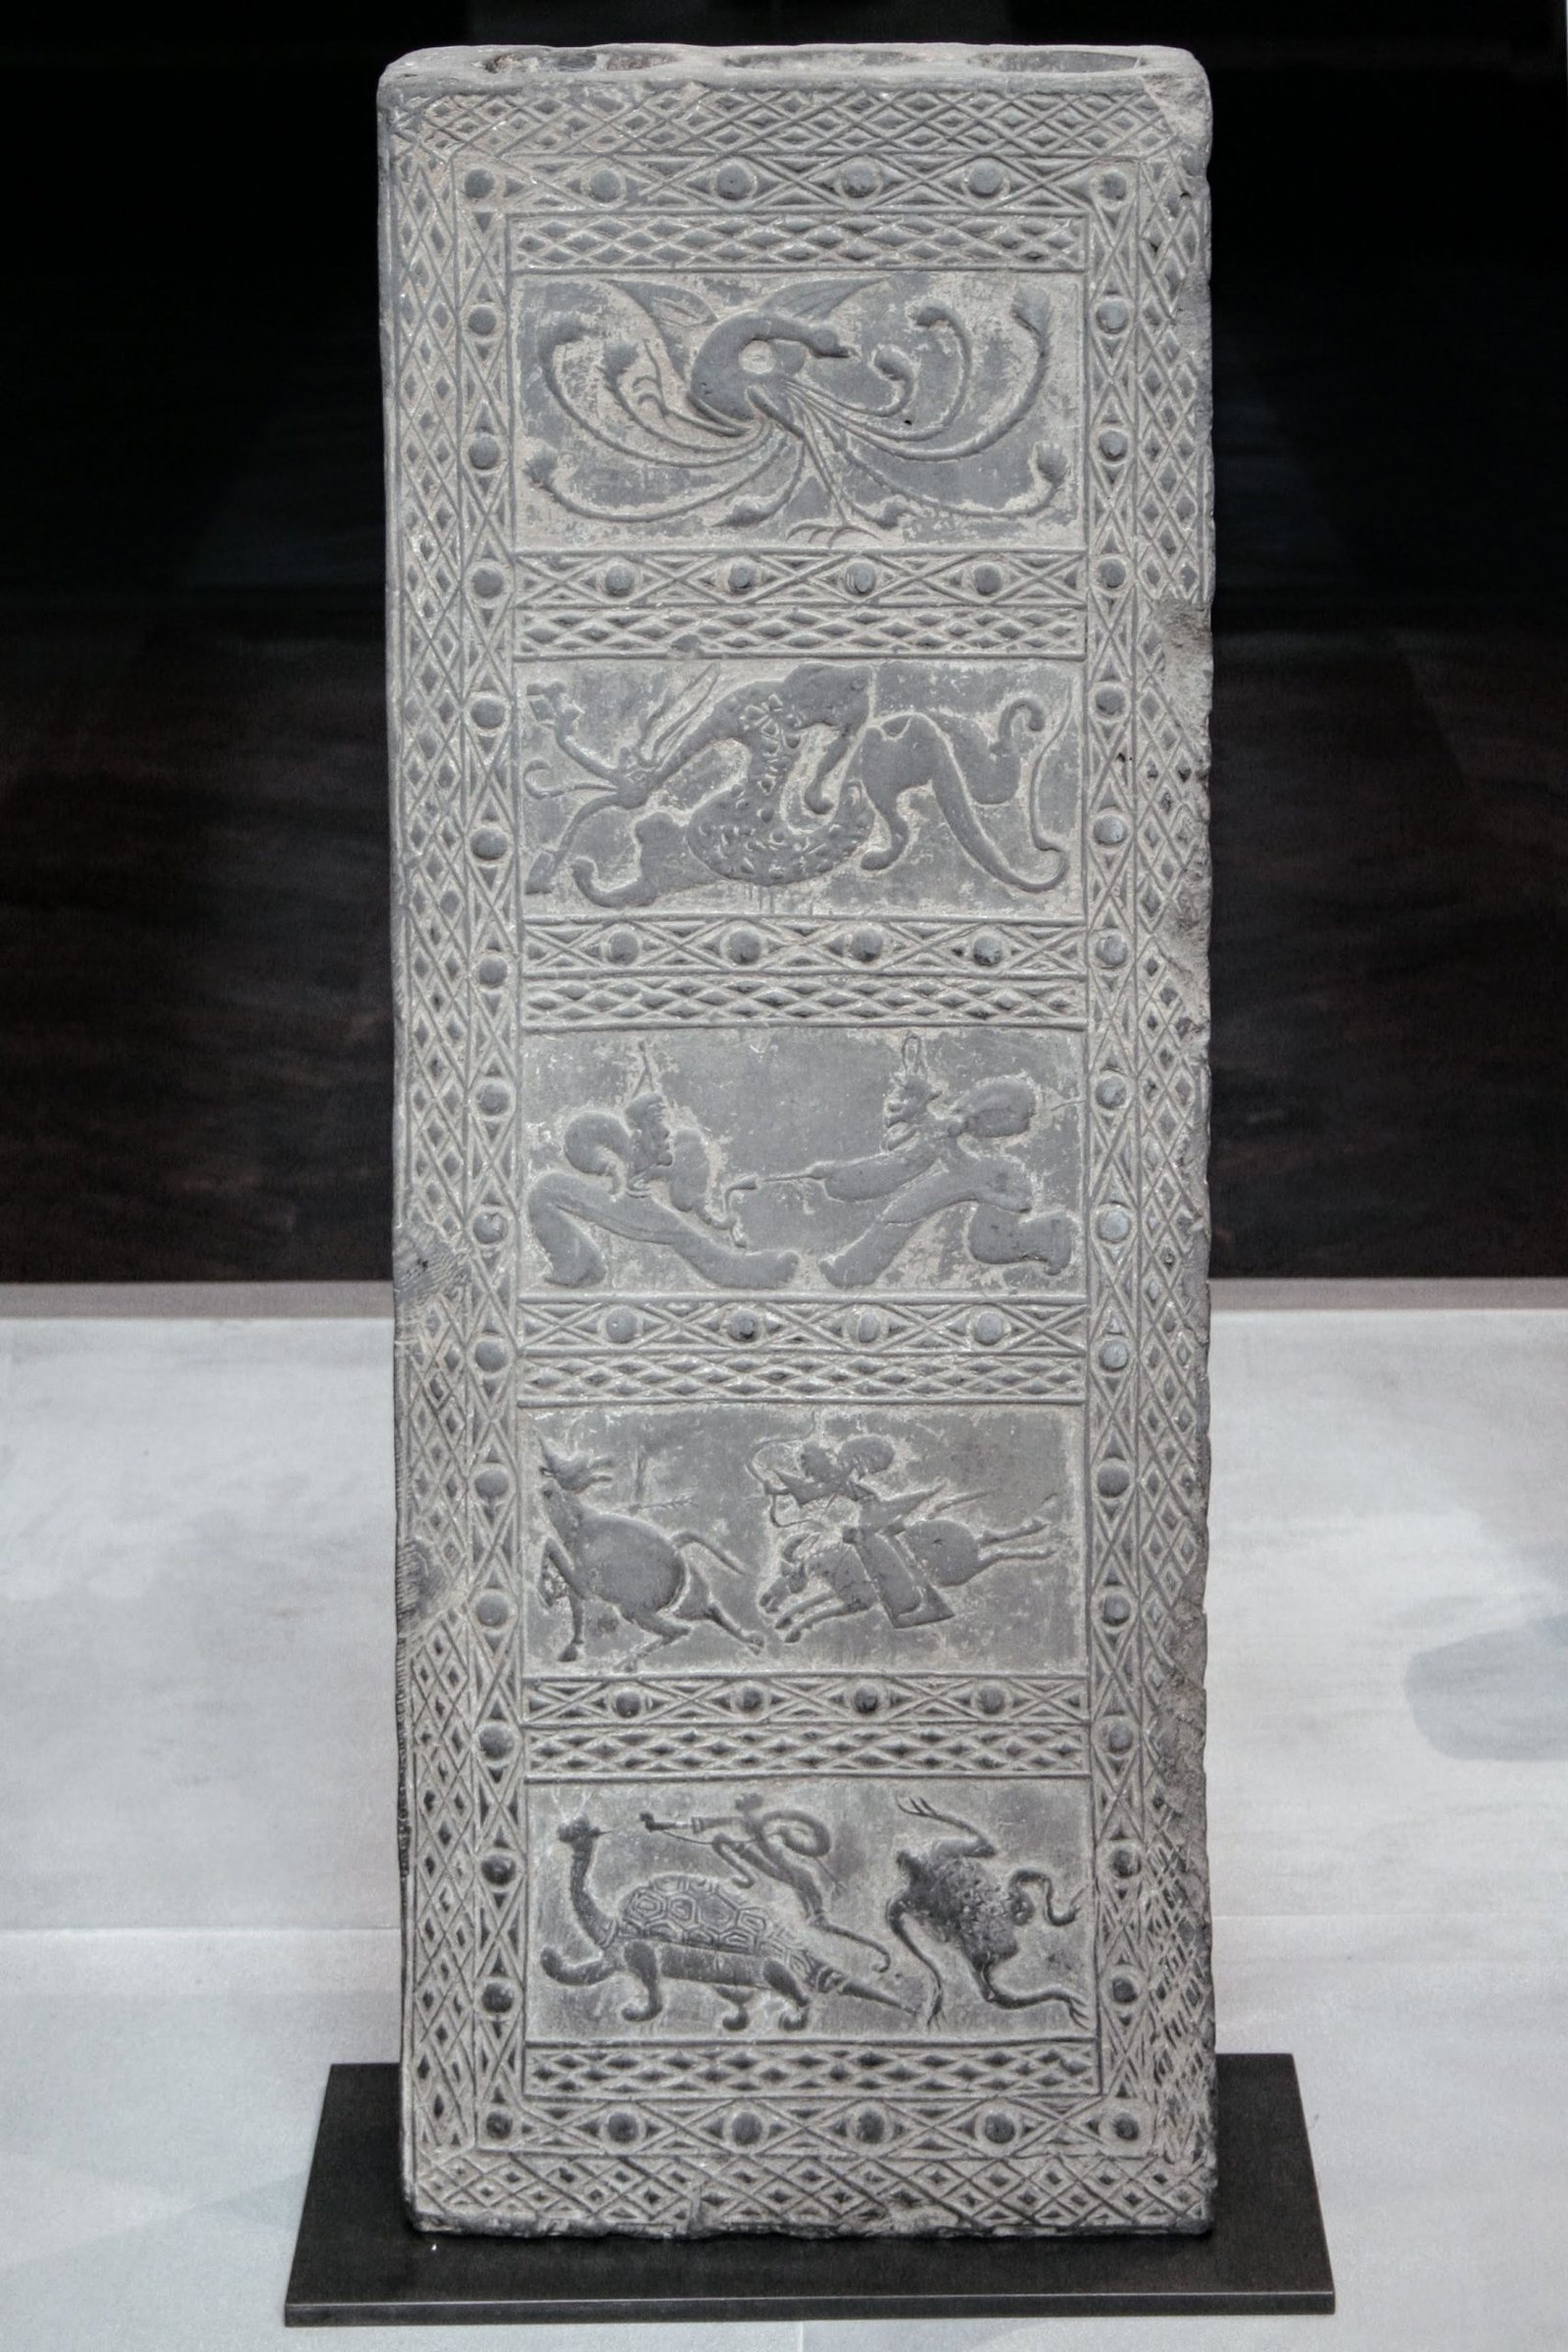 Stèle de terre cuite de la dynastie des Han, représentant des scènes de chasse et de bataille contenant des figures emblématiques des cinq directions cardinales, Musée Cernuschi,